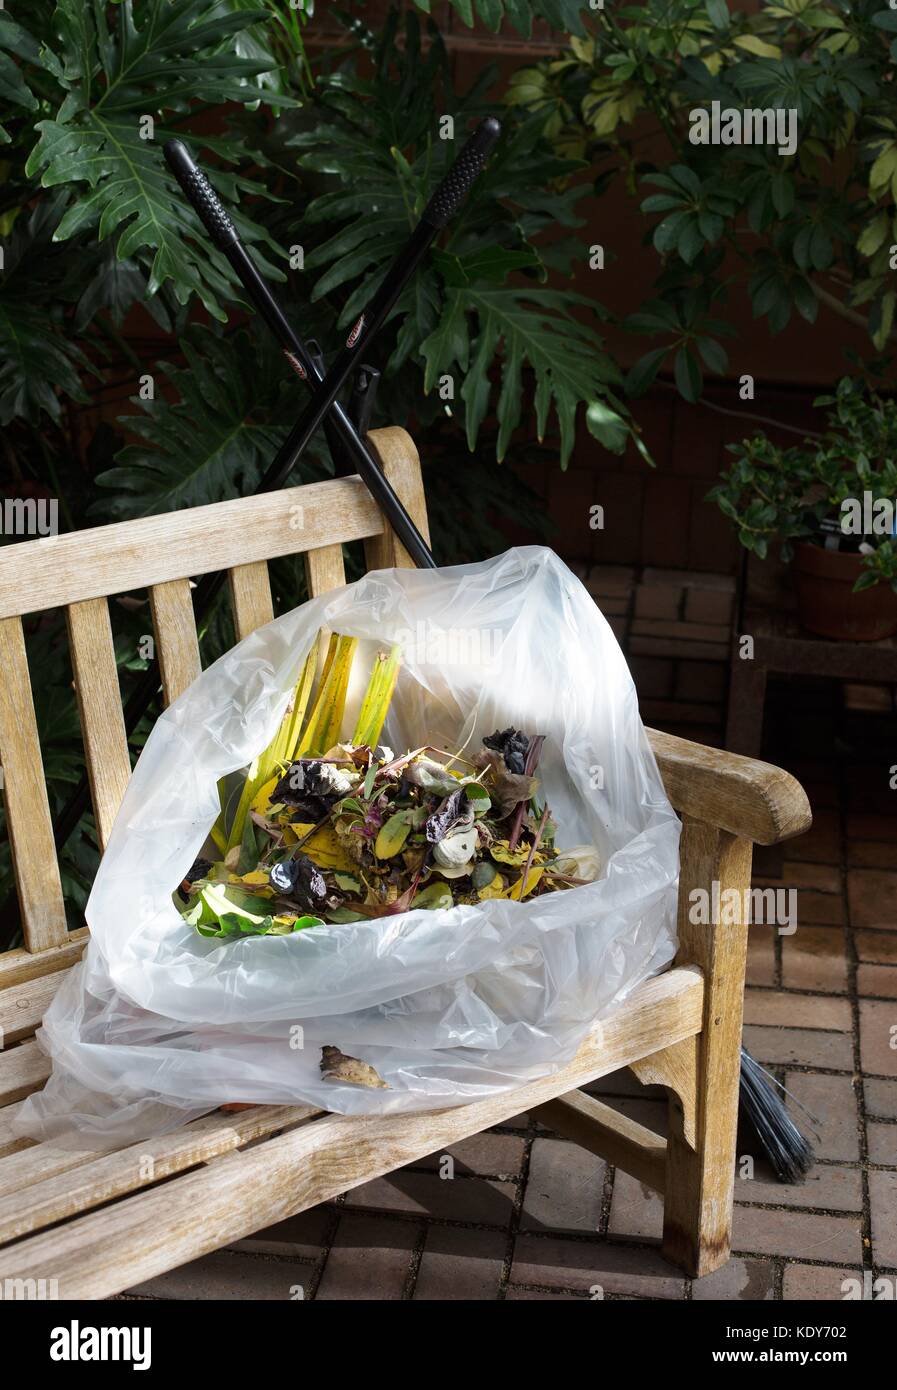 Un sac de coupures des plantes dans une serre. Banque D'Images